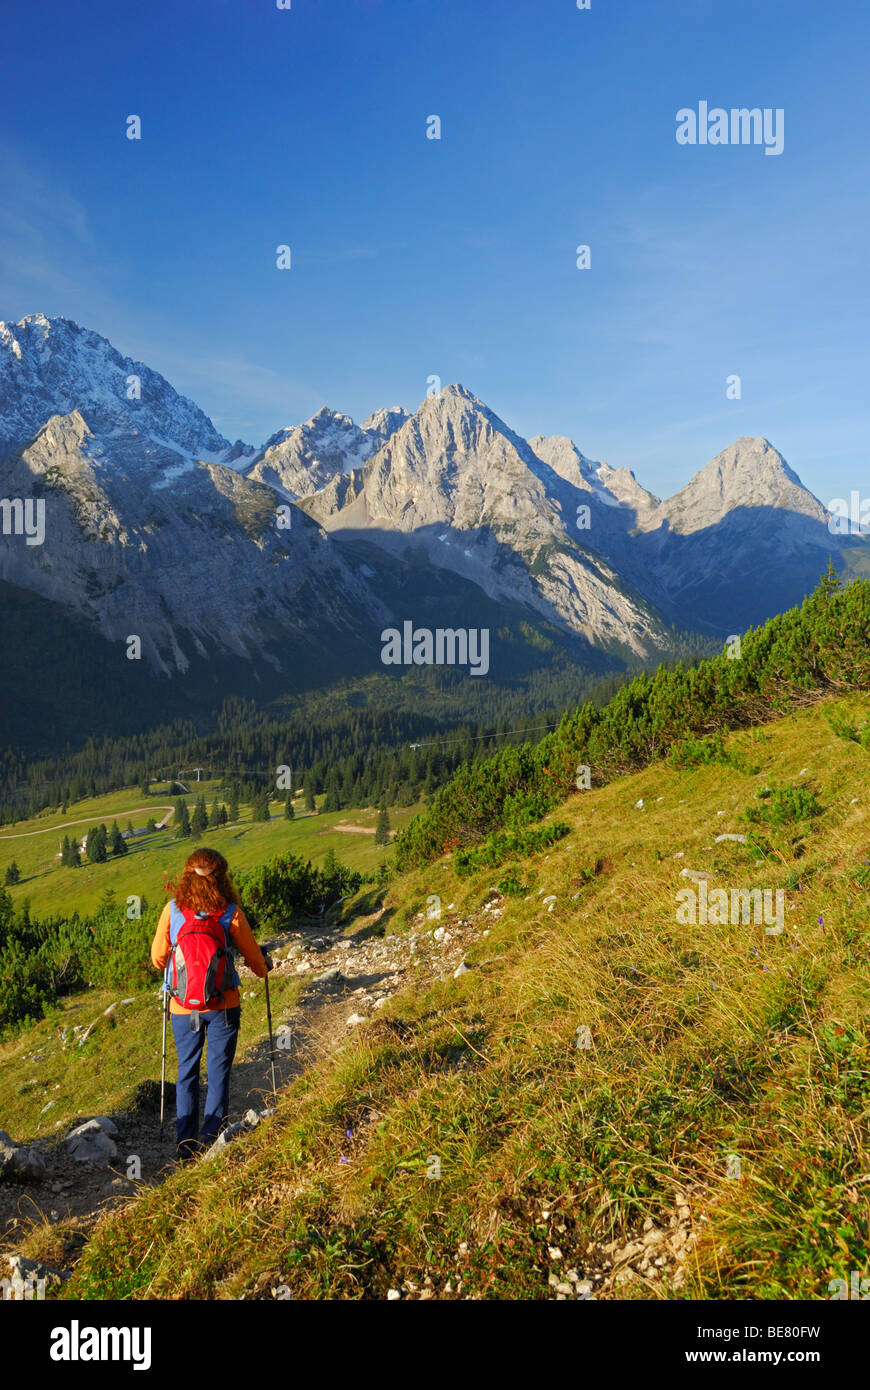 Frau Abstieg zum alpine Hütte Ehrwalder Alm mit Blick auf Griesspitze, Tajakopf und Ehrwalder Sonnenspitze, Mieminger Gebirge ra Stockfoto